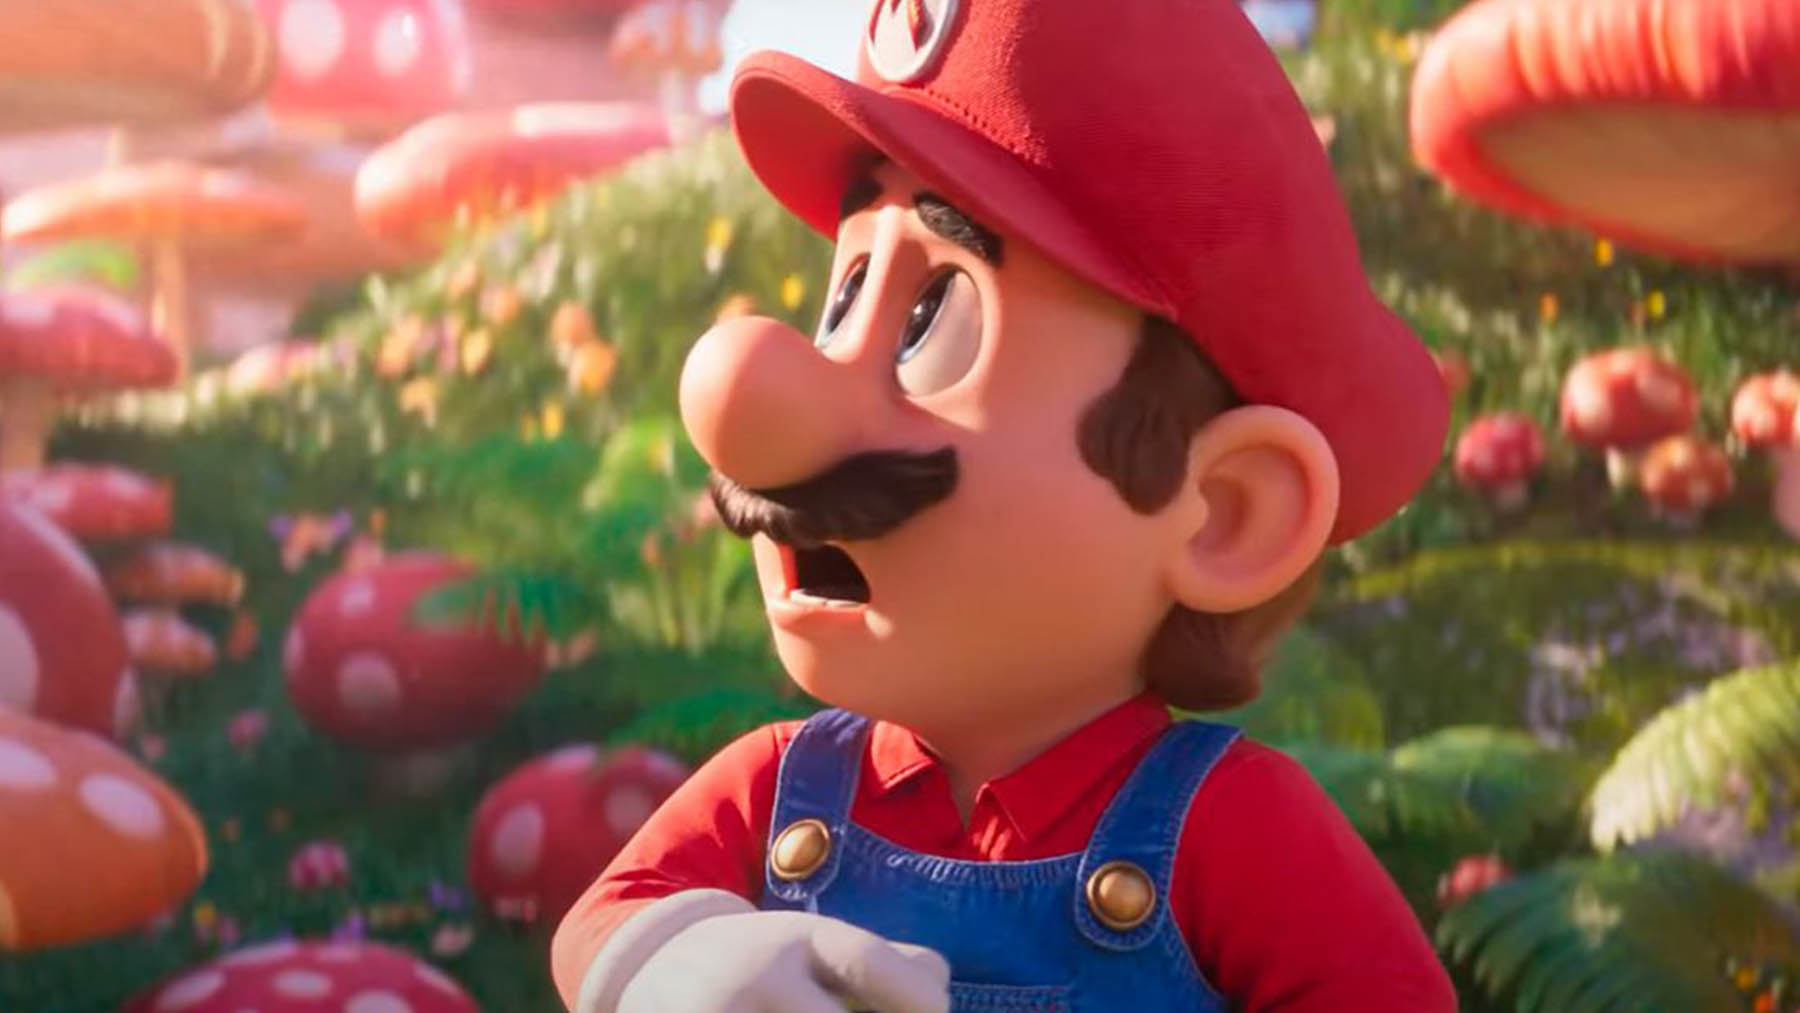 La película de ‘Super Mario Bros.’ muestra una preciosista imagen del castillo de la princesa